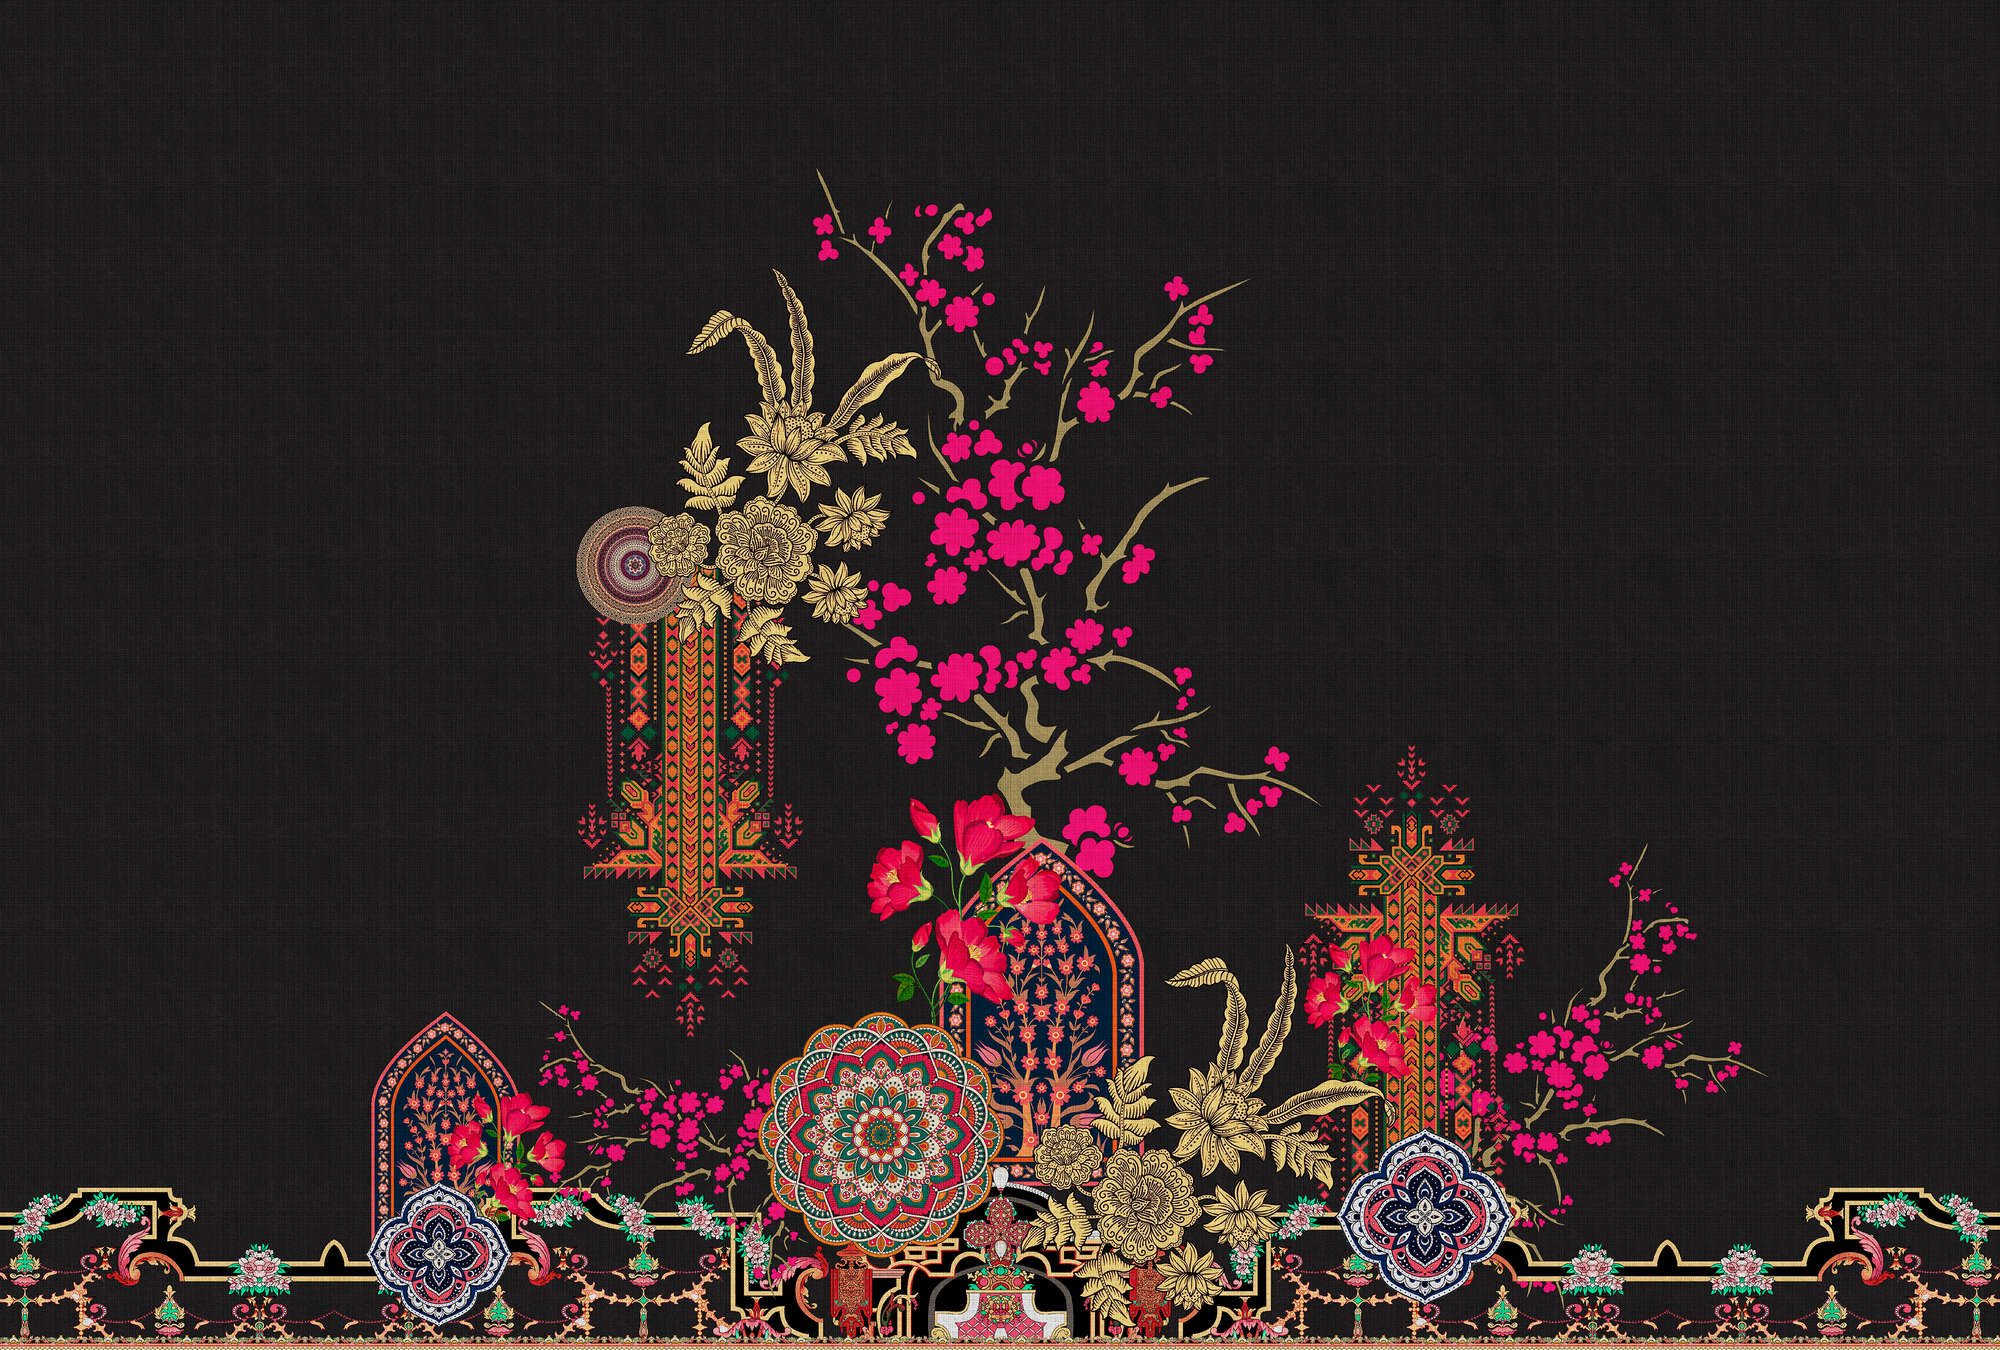             Oriental Garden 2 - Muurschildering Tropische Patronen & Bloesems
        